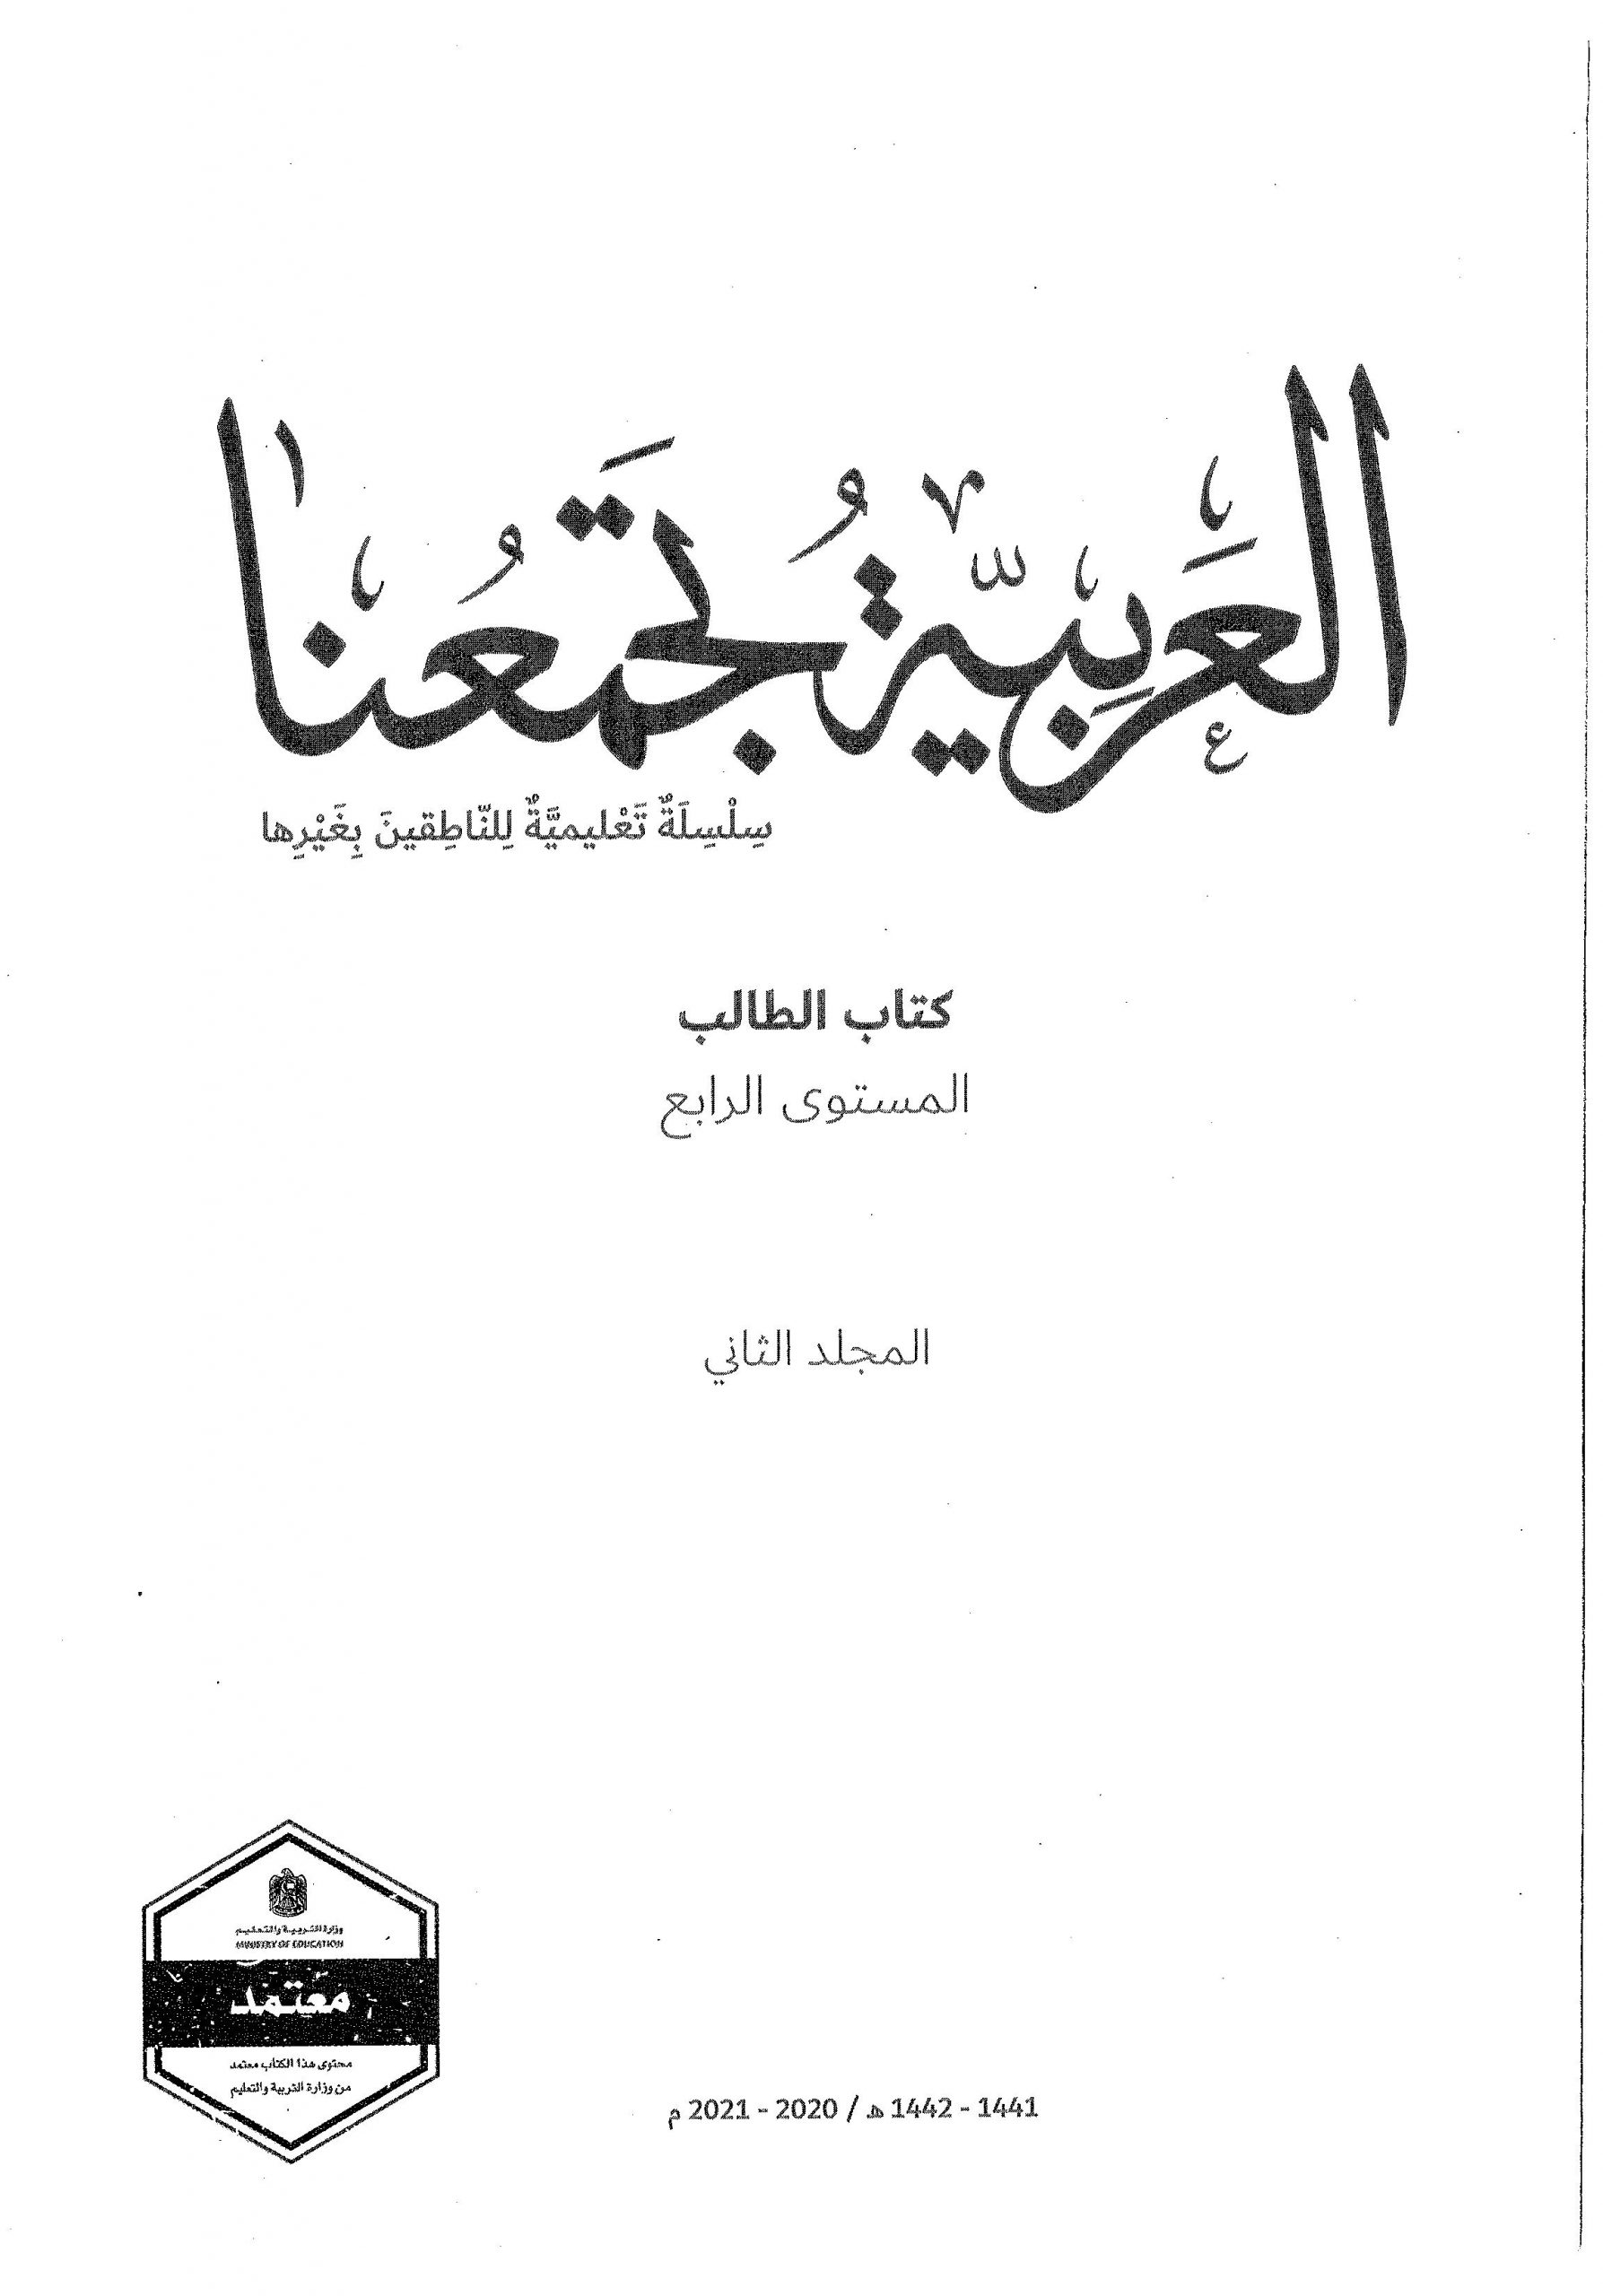 كتاب الطالب الفصل الدراسي الثاني 2020-2021 لغير الناطقين بها الصف الرابع مادة اللغة العربية 